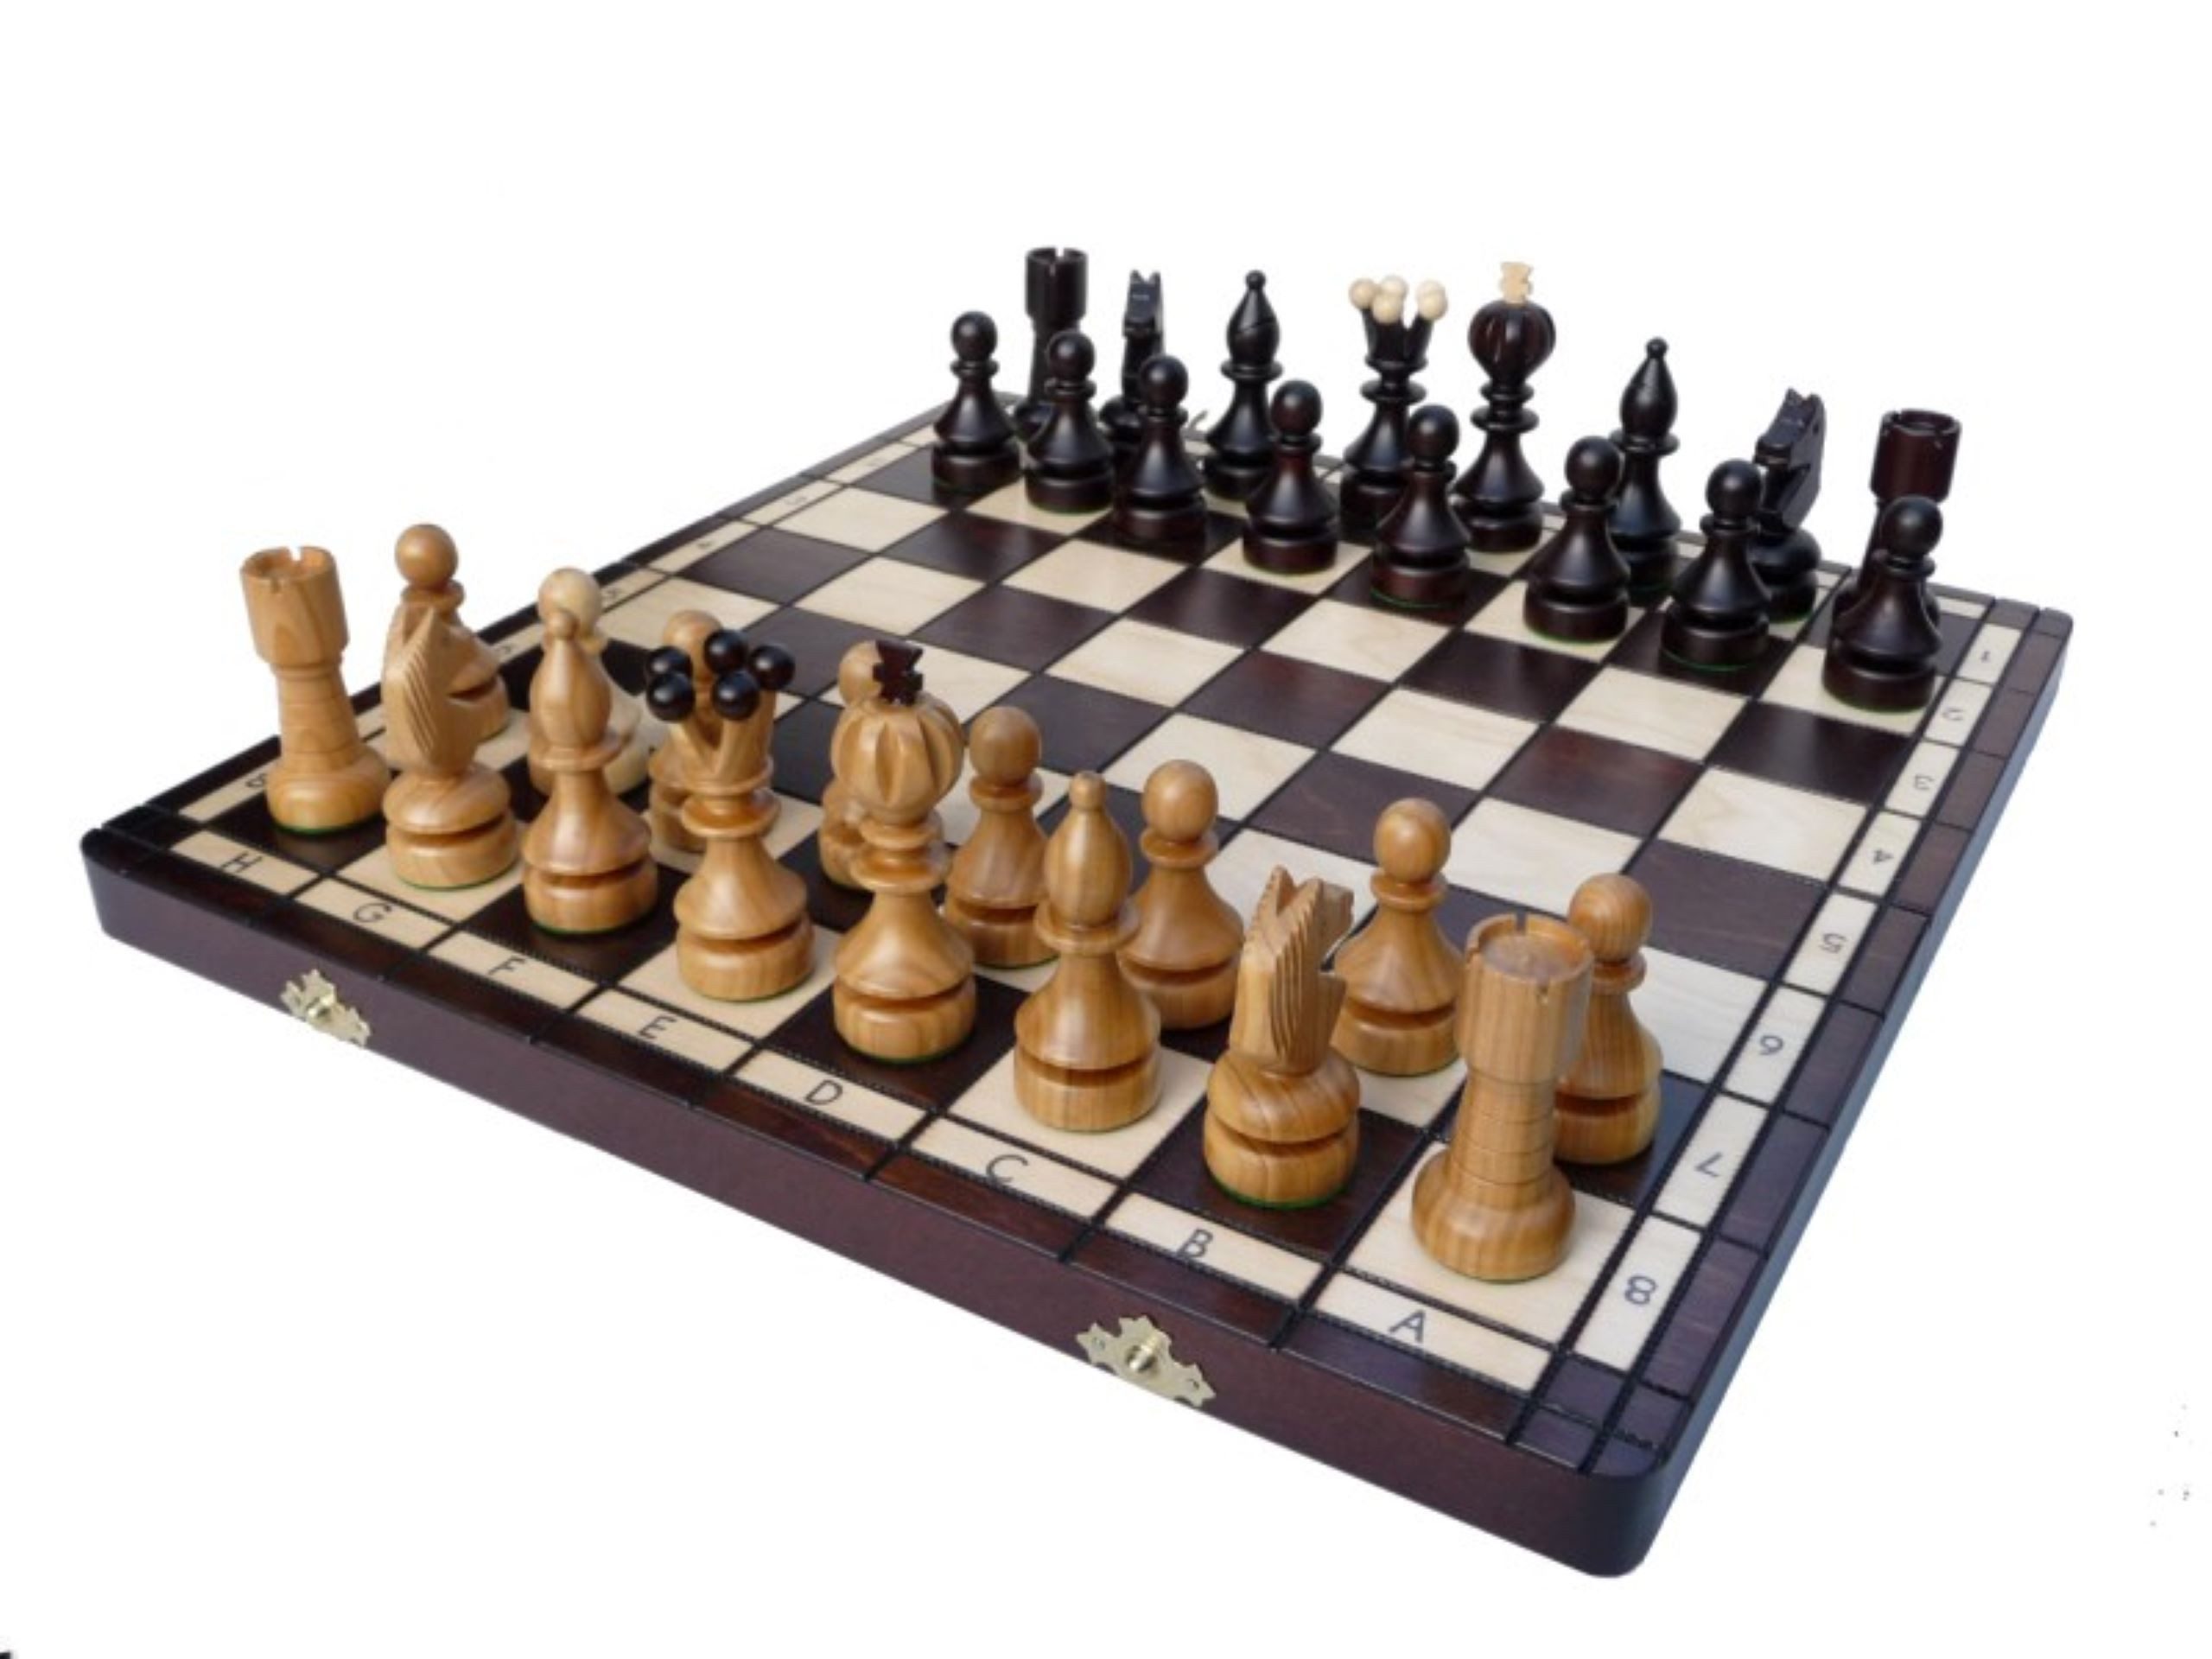 Holzprodukte Spiel, Sehr edles Schach Schachspiel Schachbrett 42x42 Holz Neu